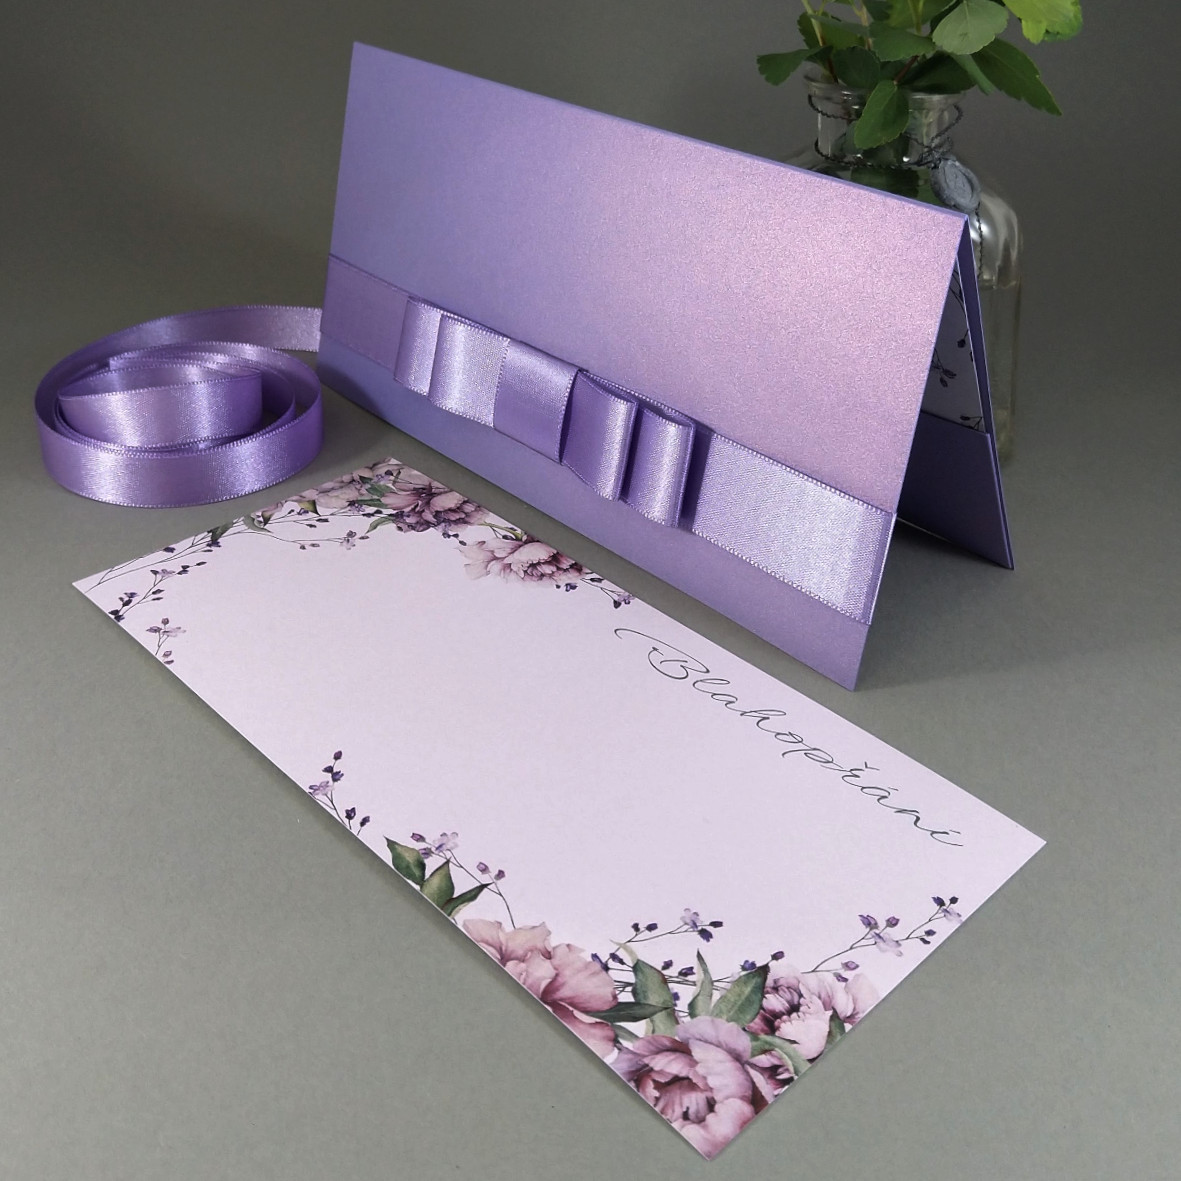 Blahopřání – jednoduchá karta s motivem pivoněk vložená do dárkové obálky, převládající barva fialová.